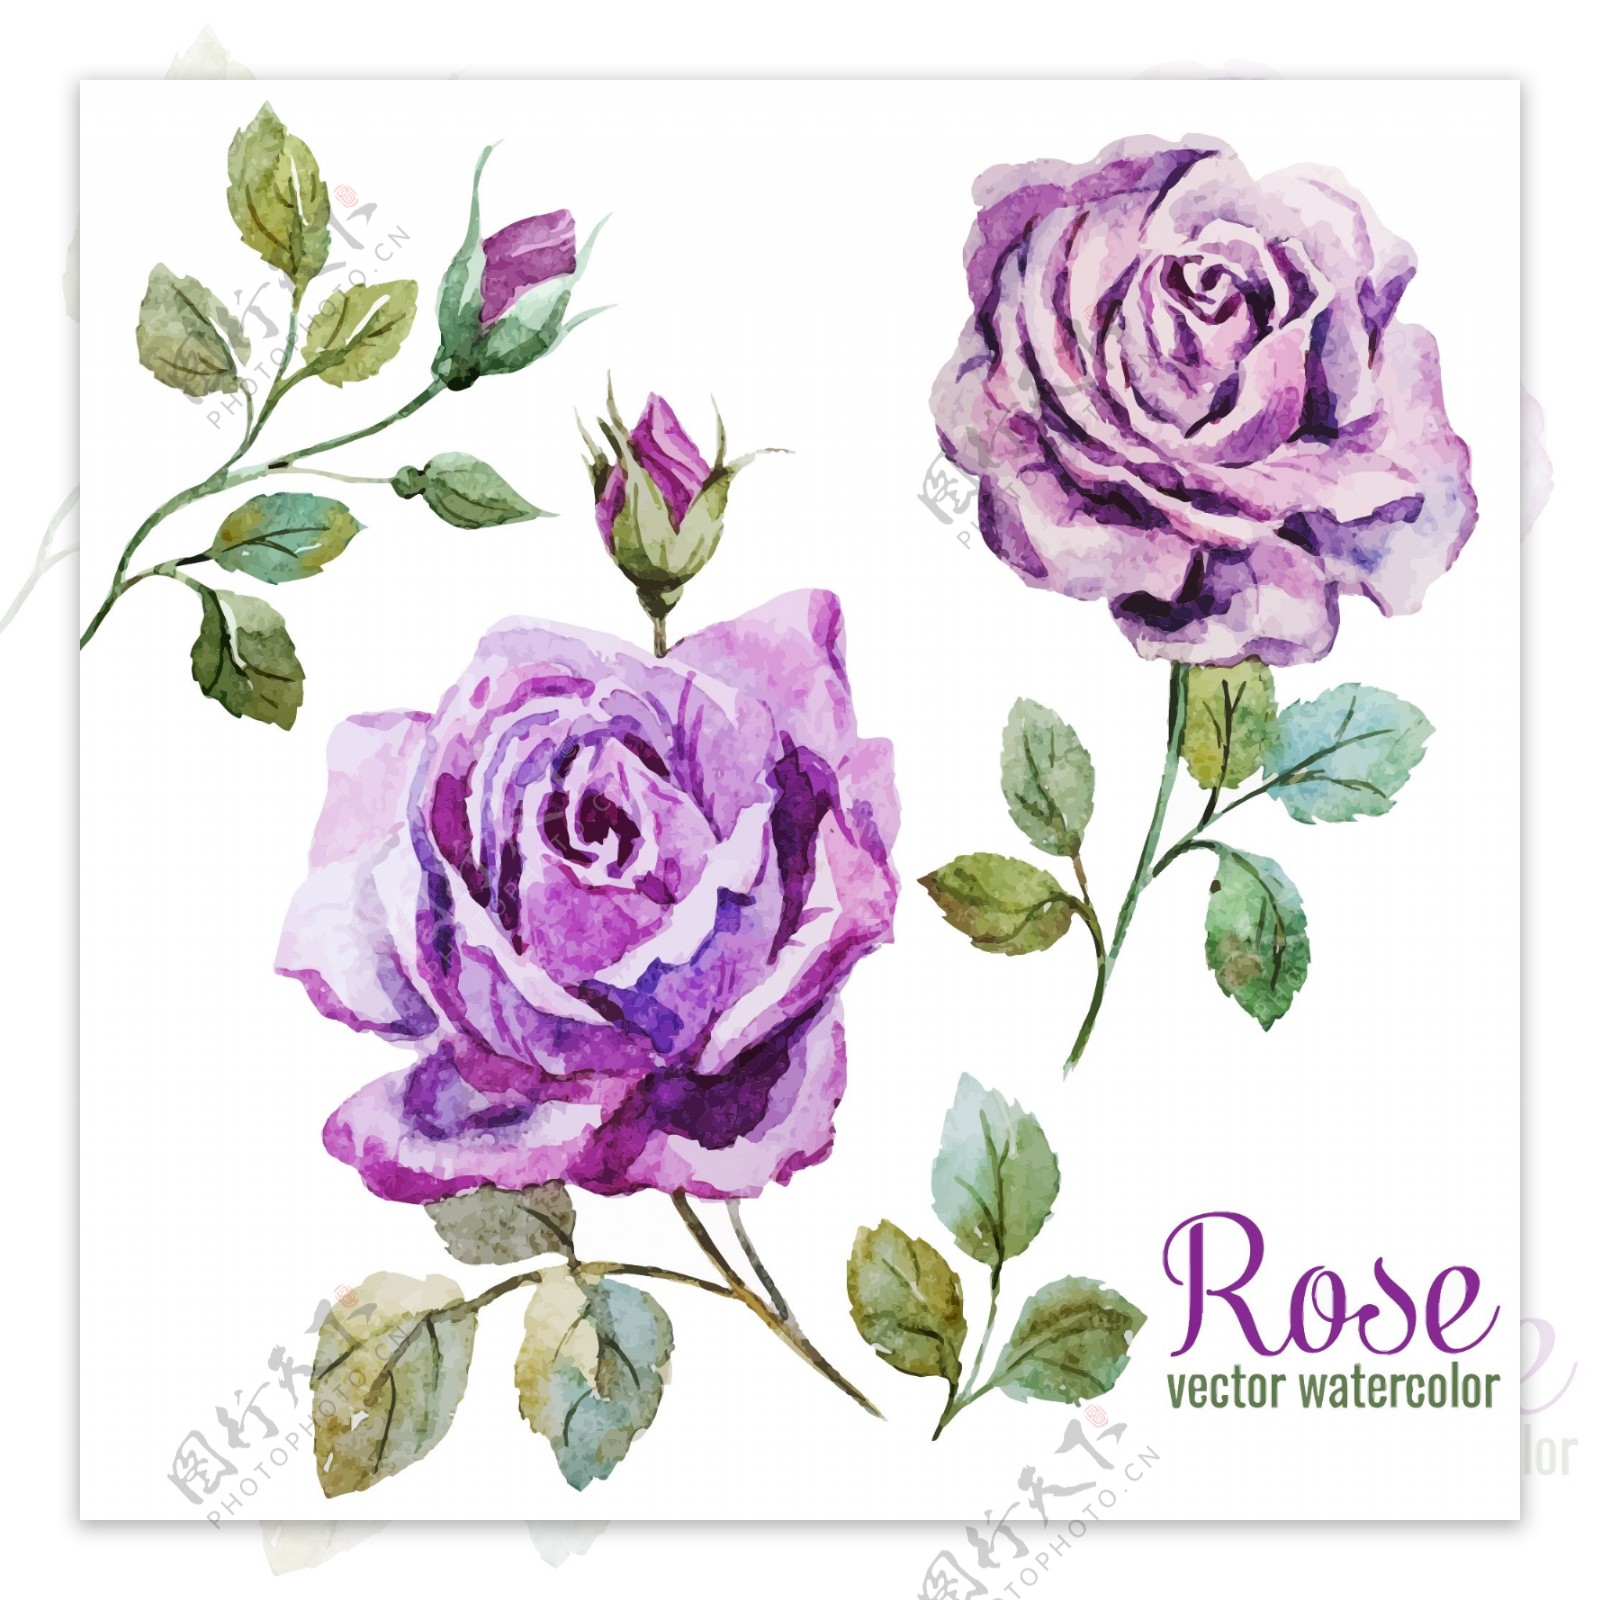 唯美水彩绘紫玫瑰插画